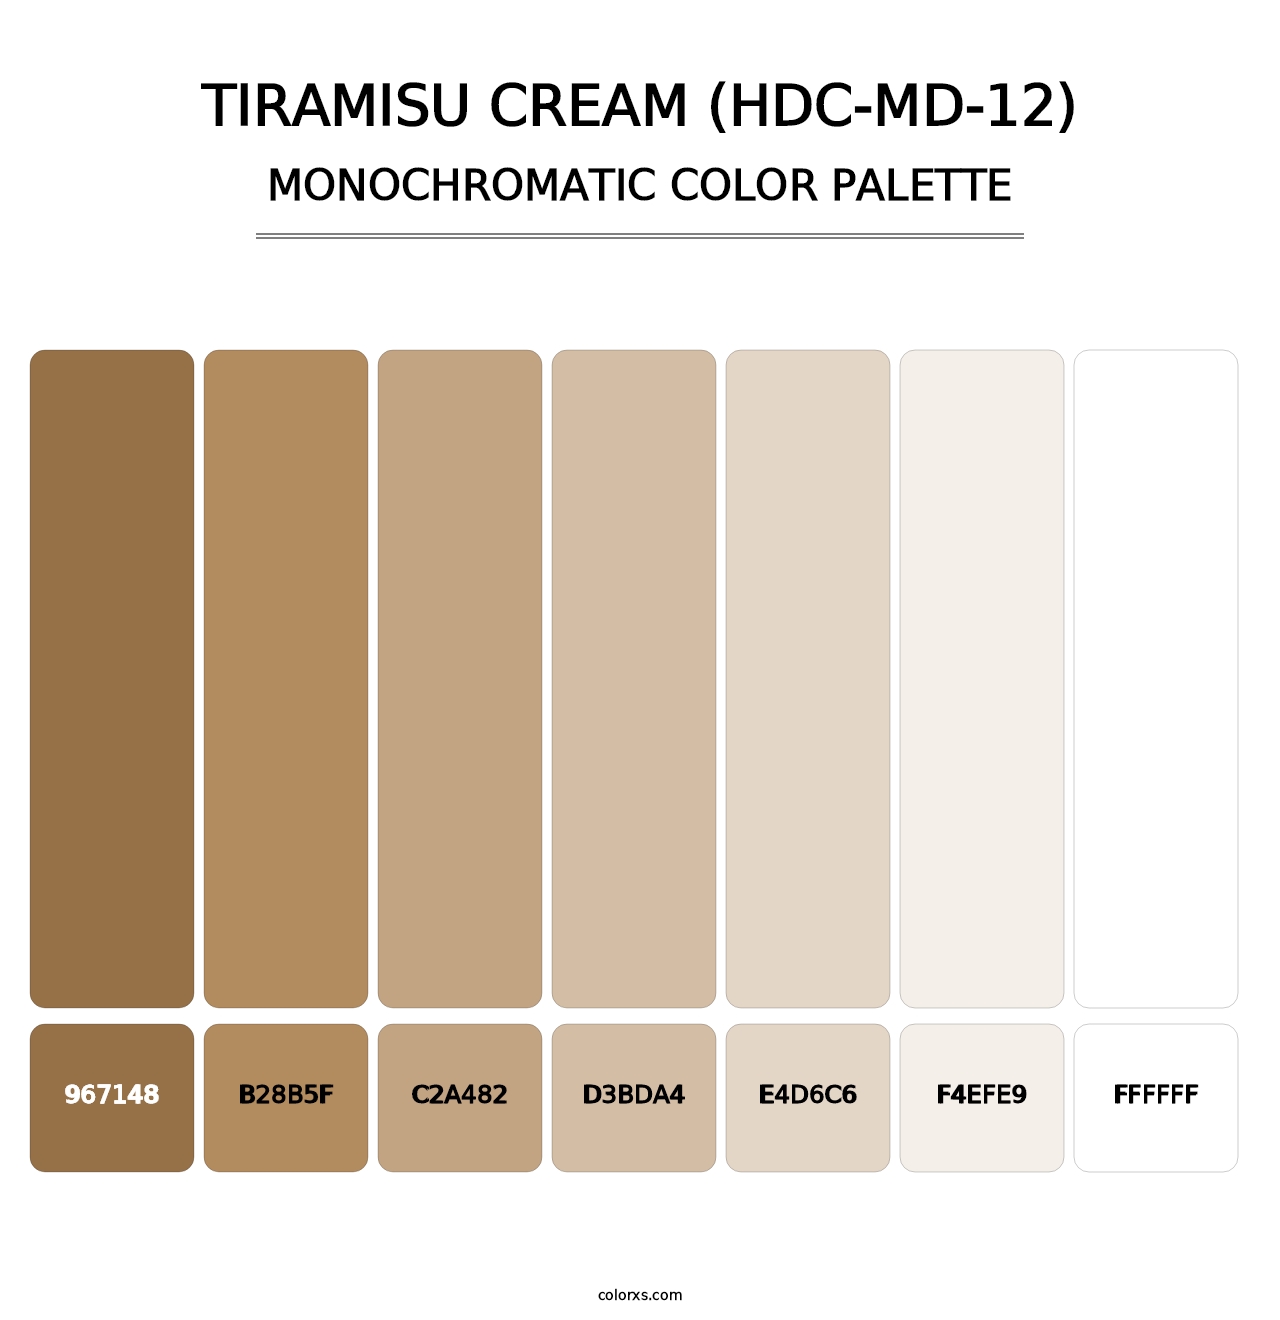 Tiramisu Cream (HDC-MD-12) - Monochromatic Color Palette